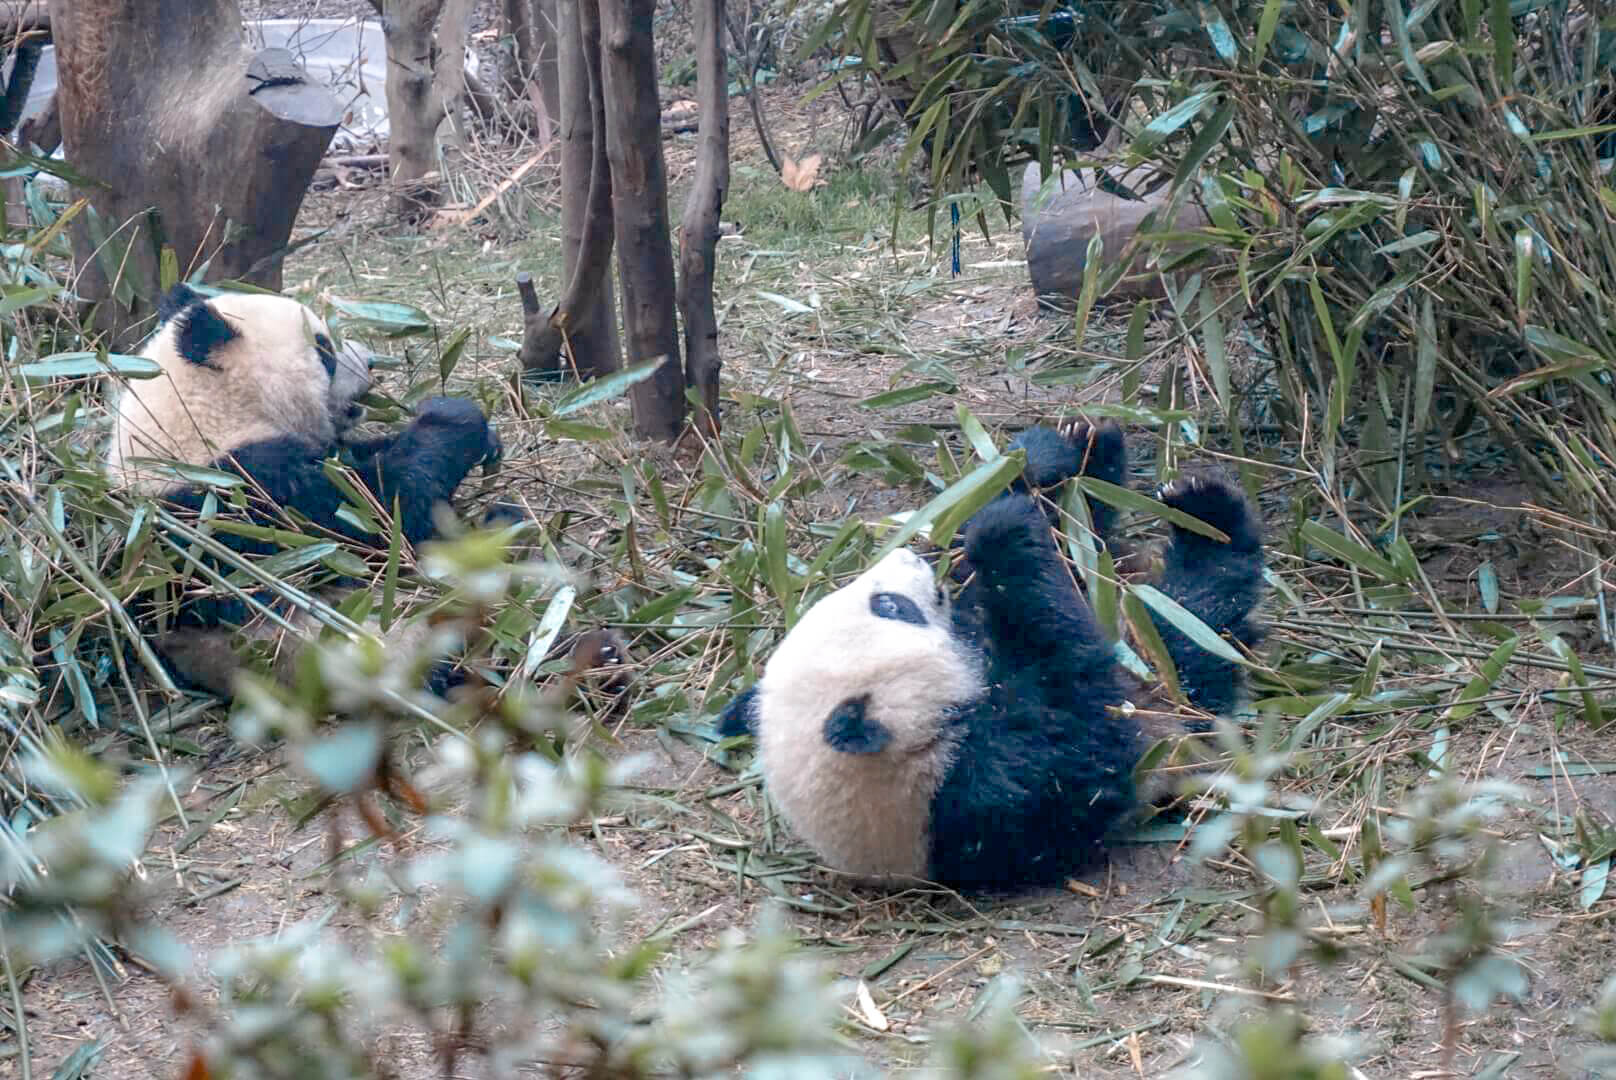 comment voir les pandas de chengdu reveillés